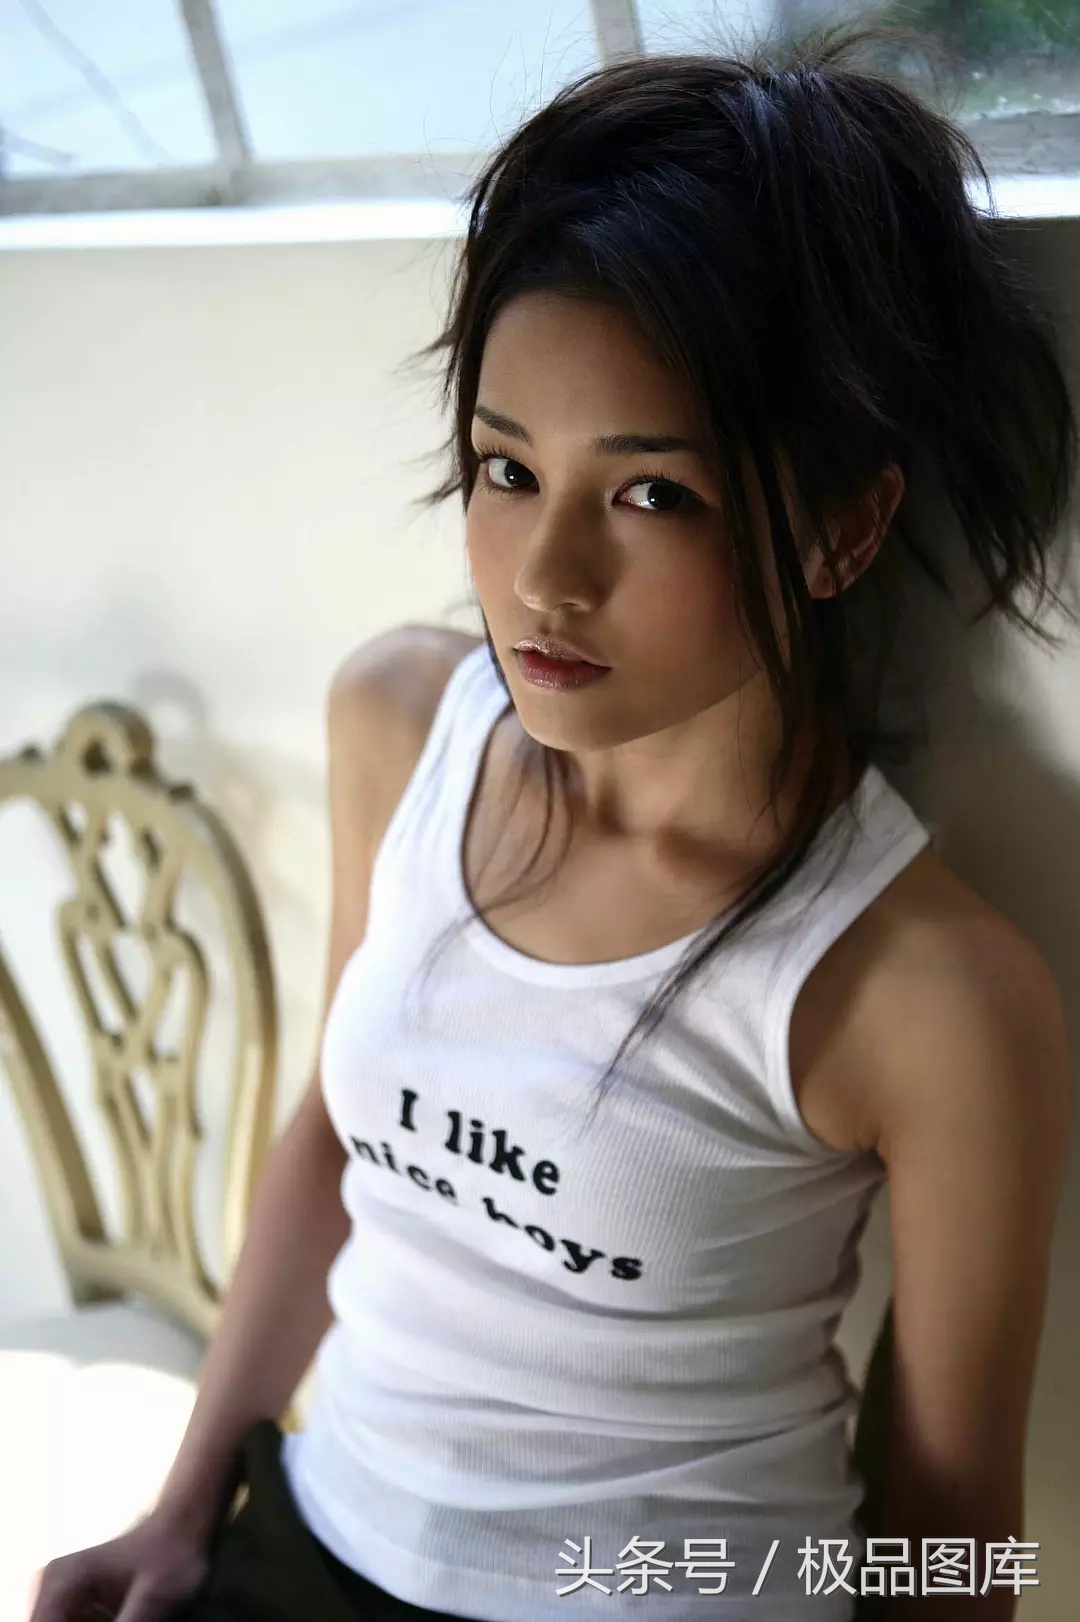 黑木明紗，1988年5月28日出生于日本沖繩縣，日本女演員、模特/ 作者: / 來源: